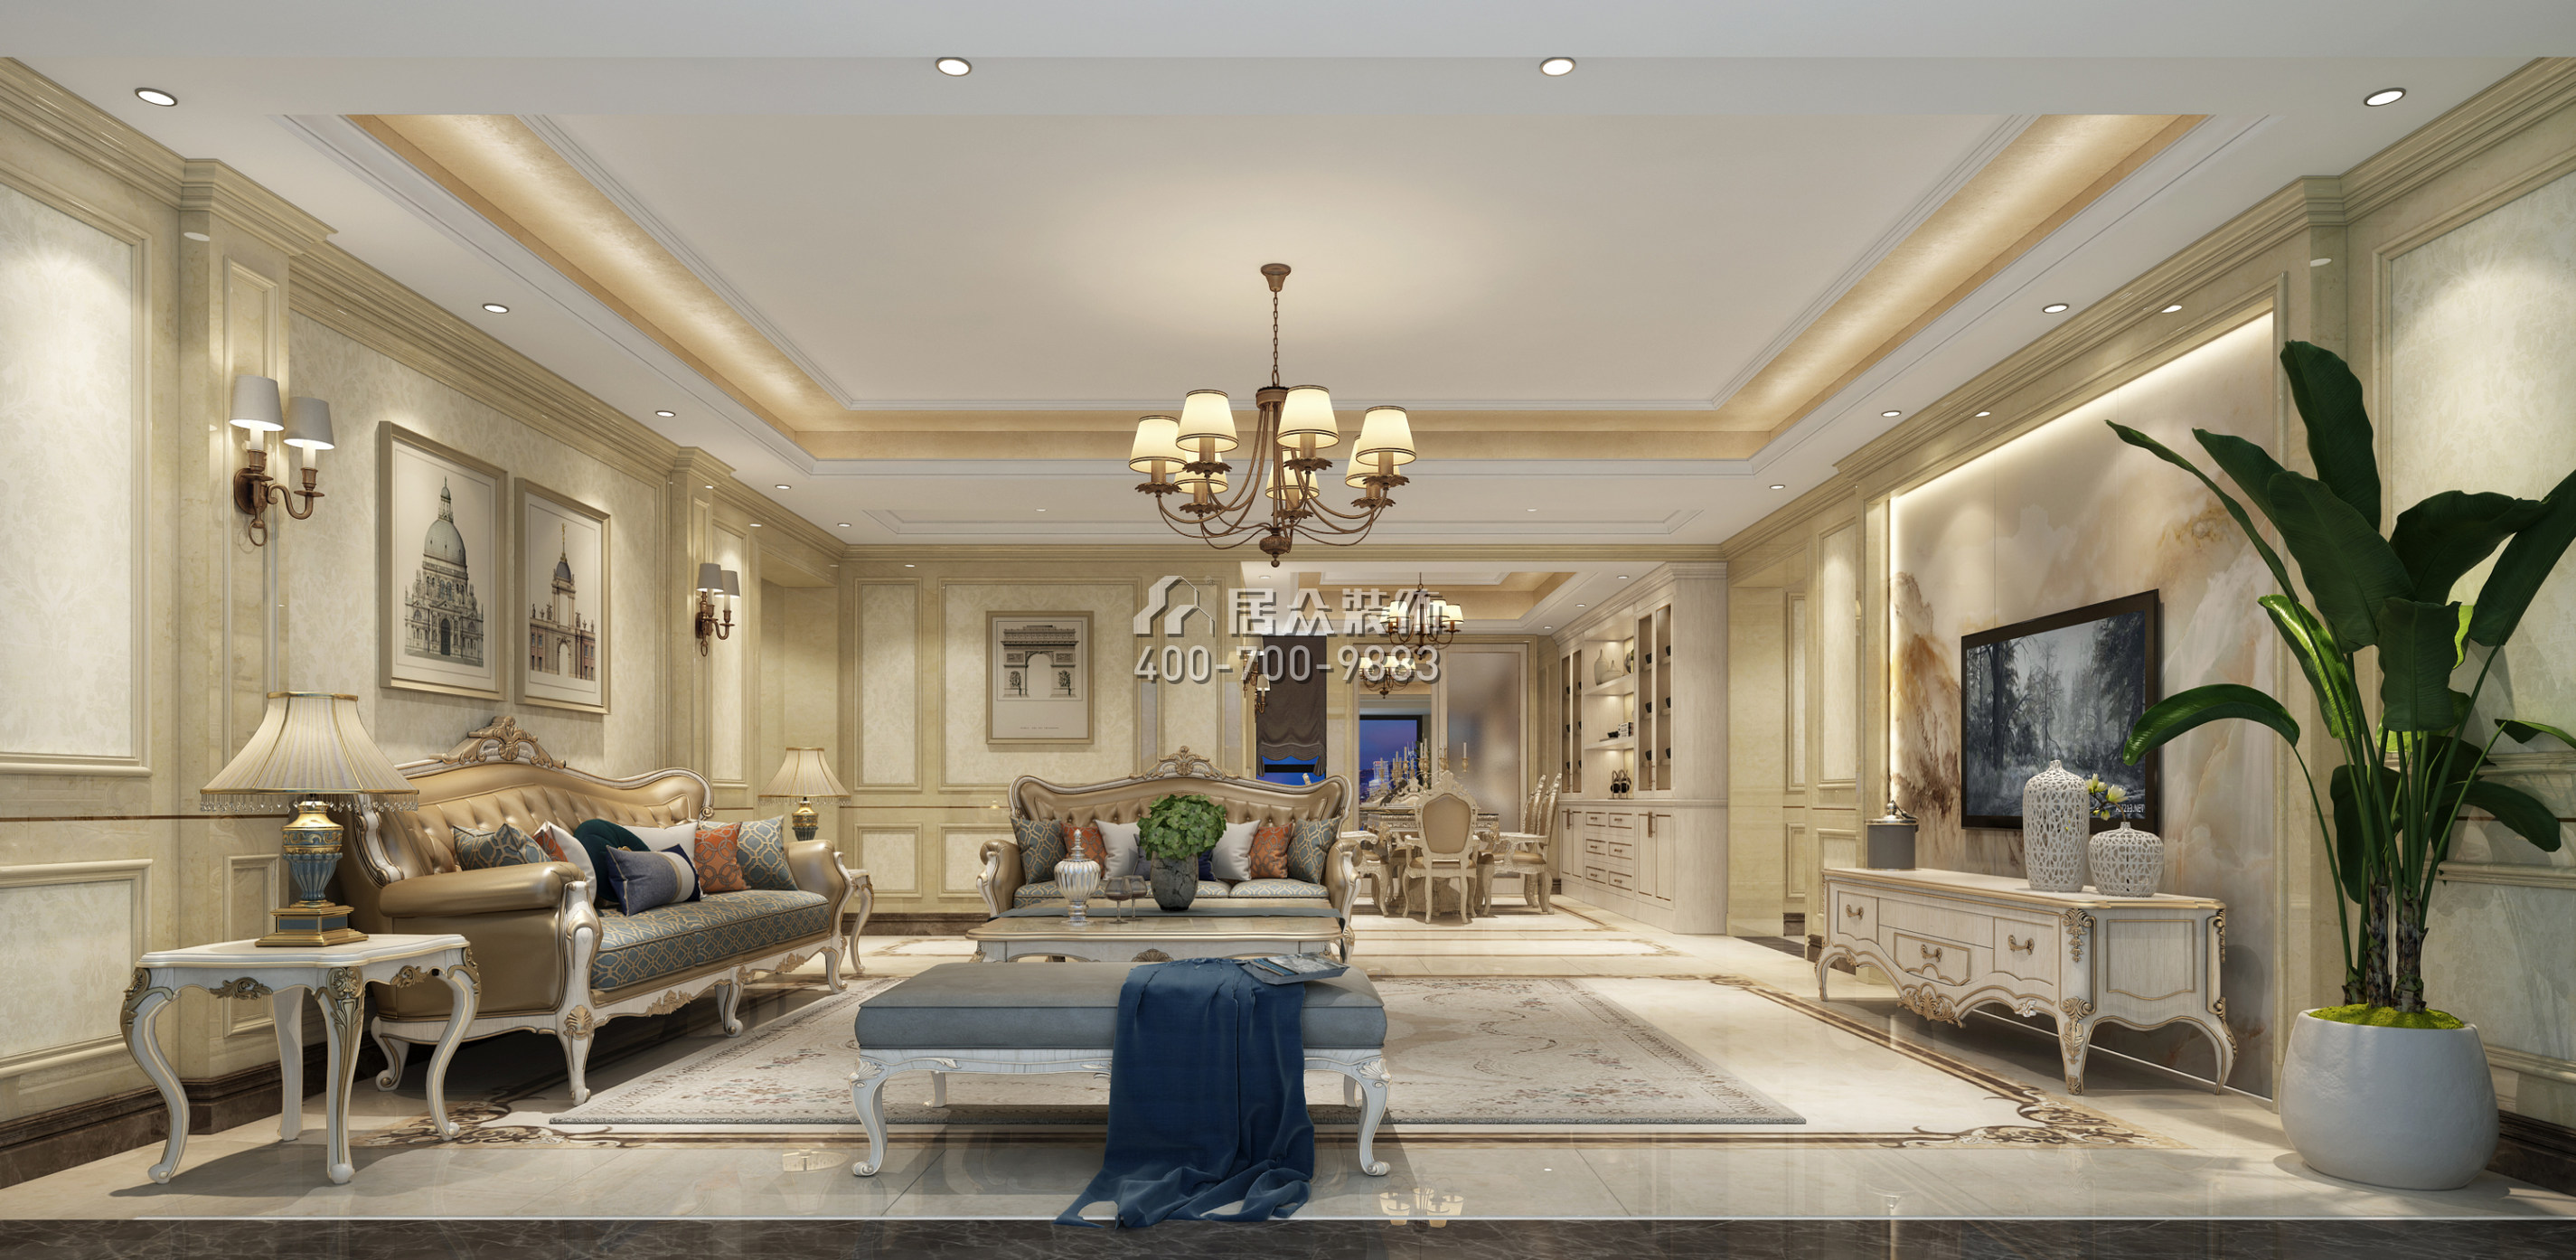 汉森吉祥龙180平方米欧式风格平层户型客厅装修效果图